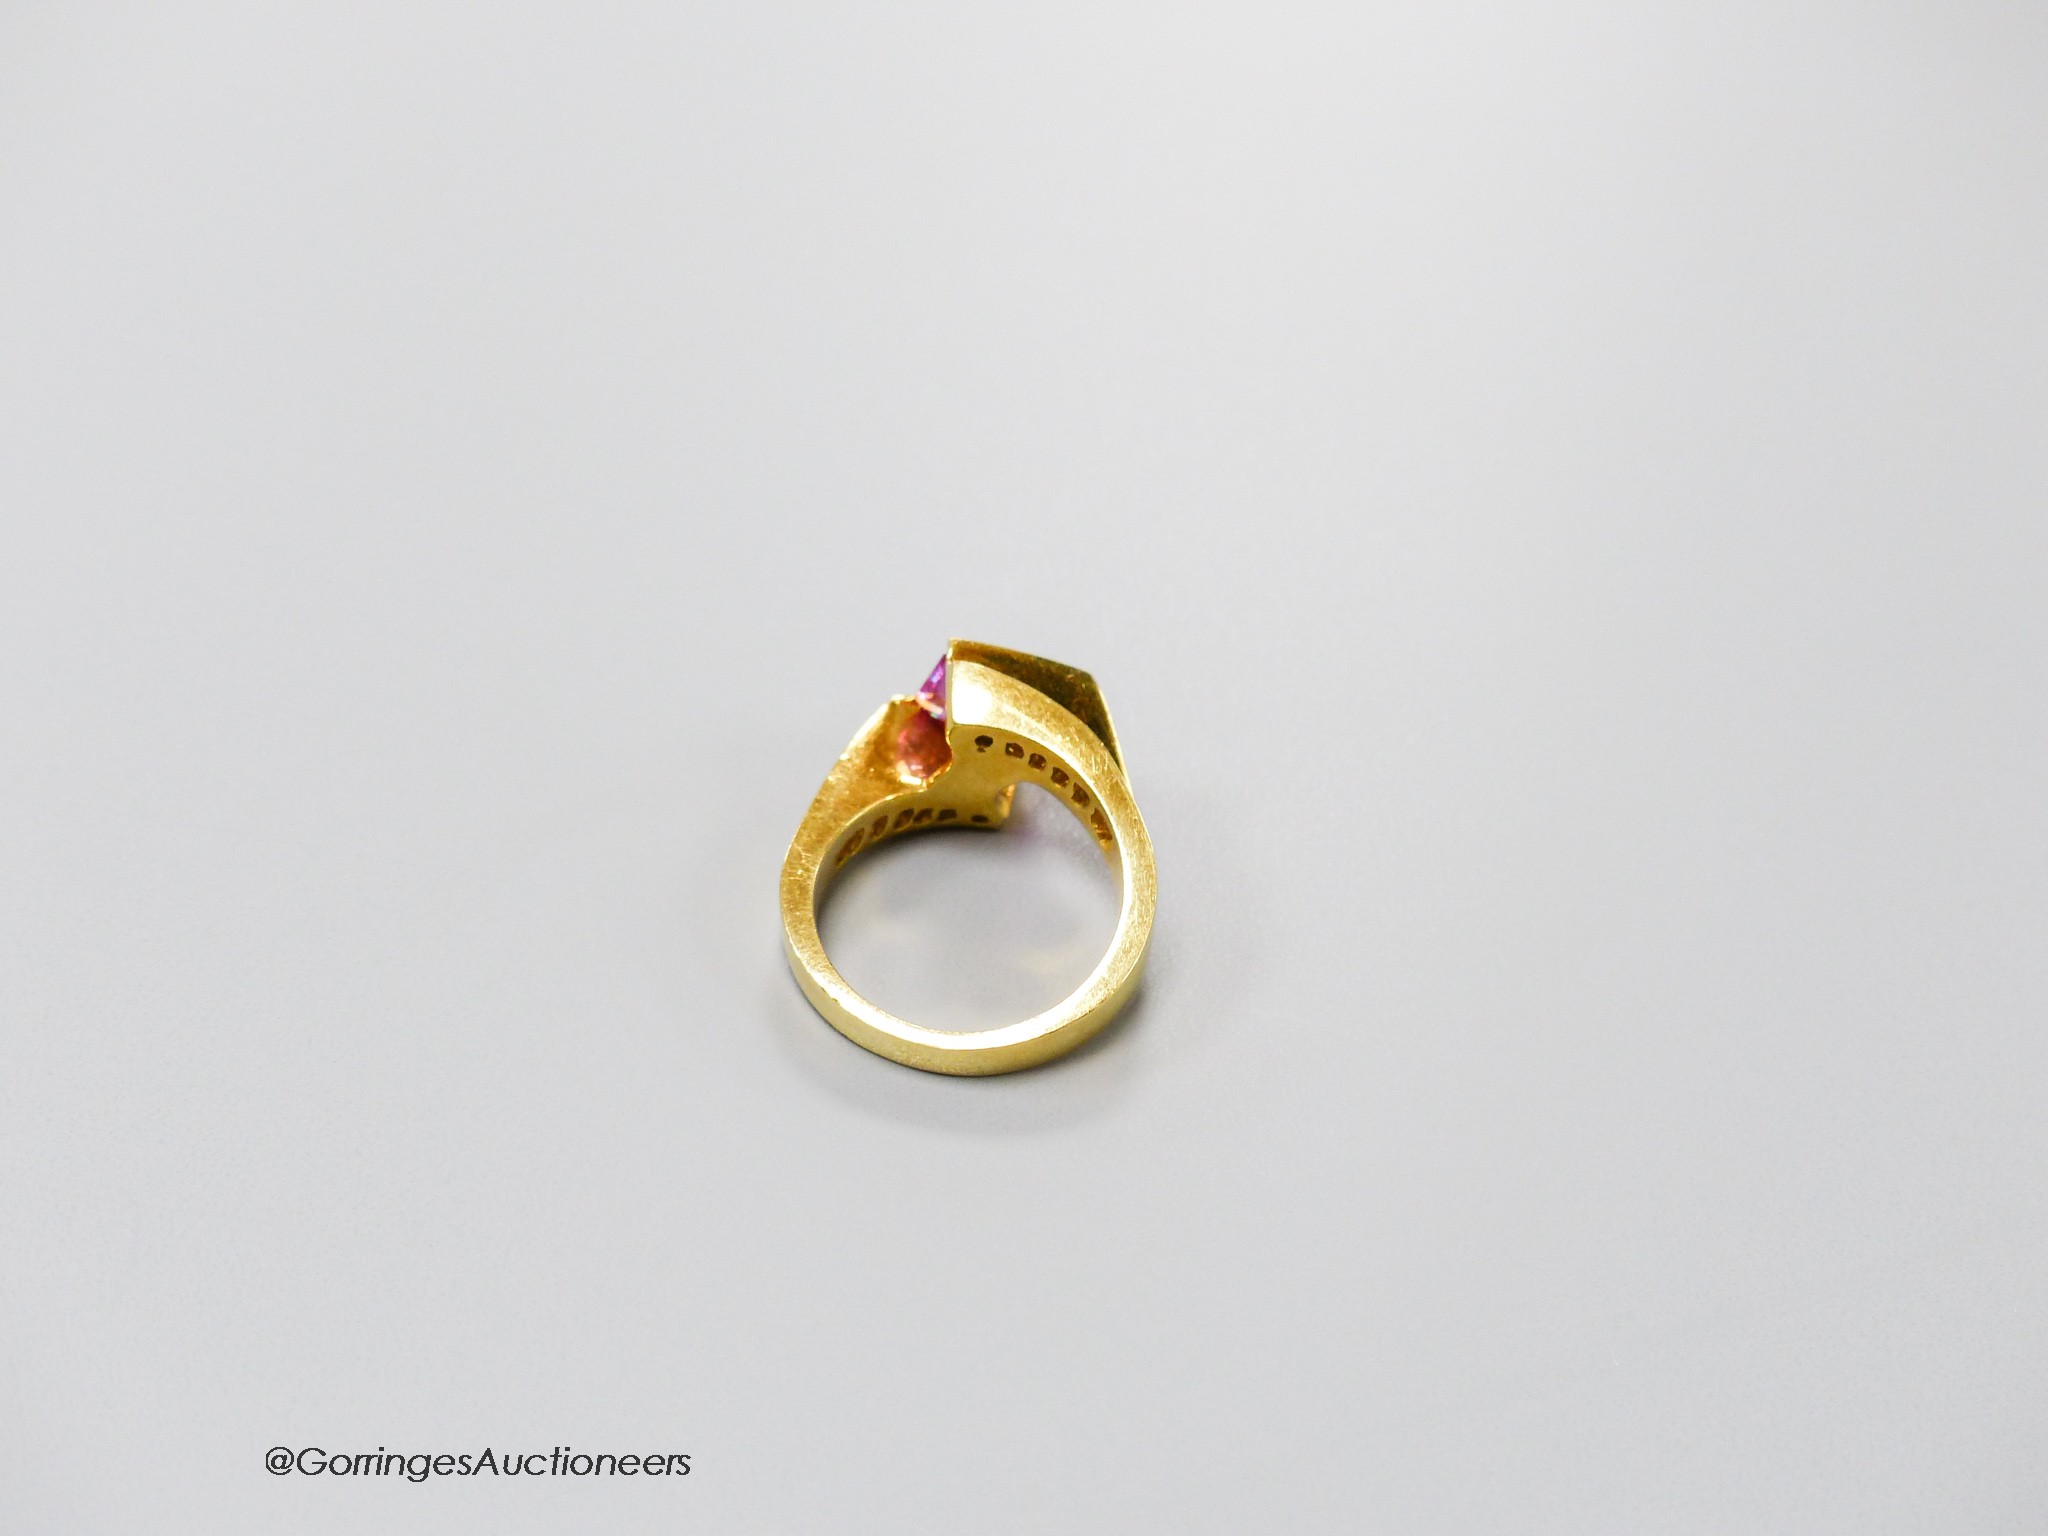 A modern 18k gold, emerald cut pink sapphire set dress ring, with graduated baguette cut diamond set shoulders, size M, gross weight 8.6 grams.